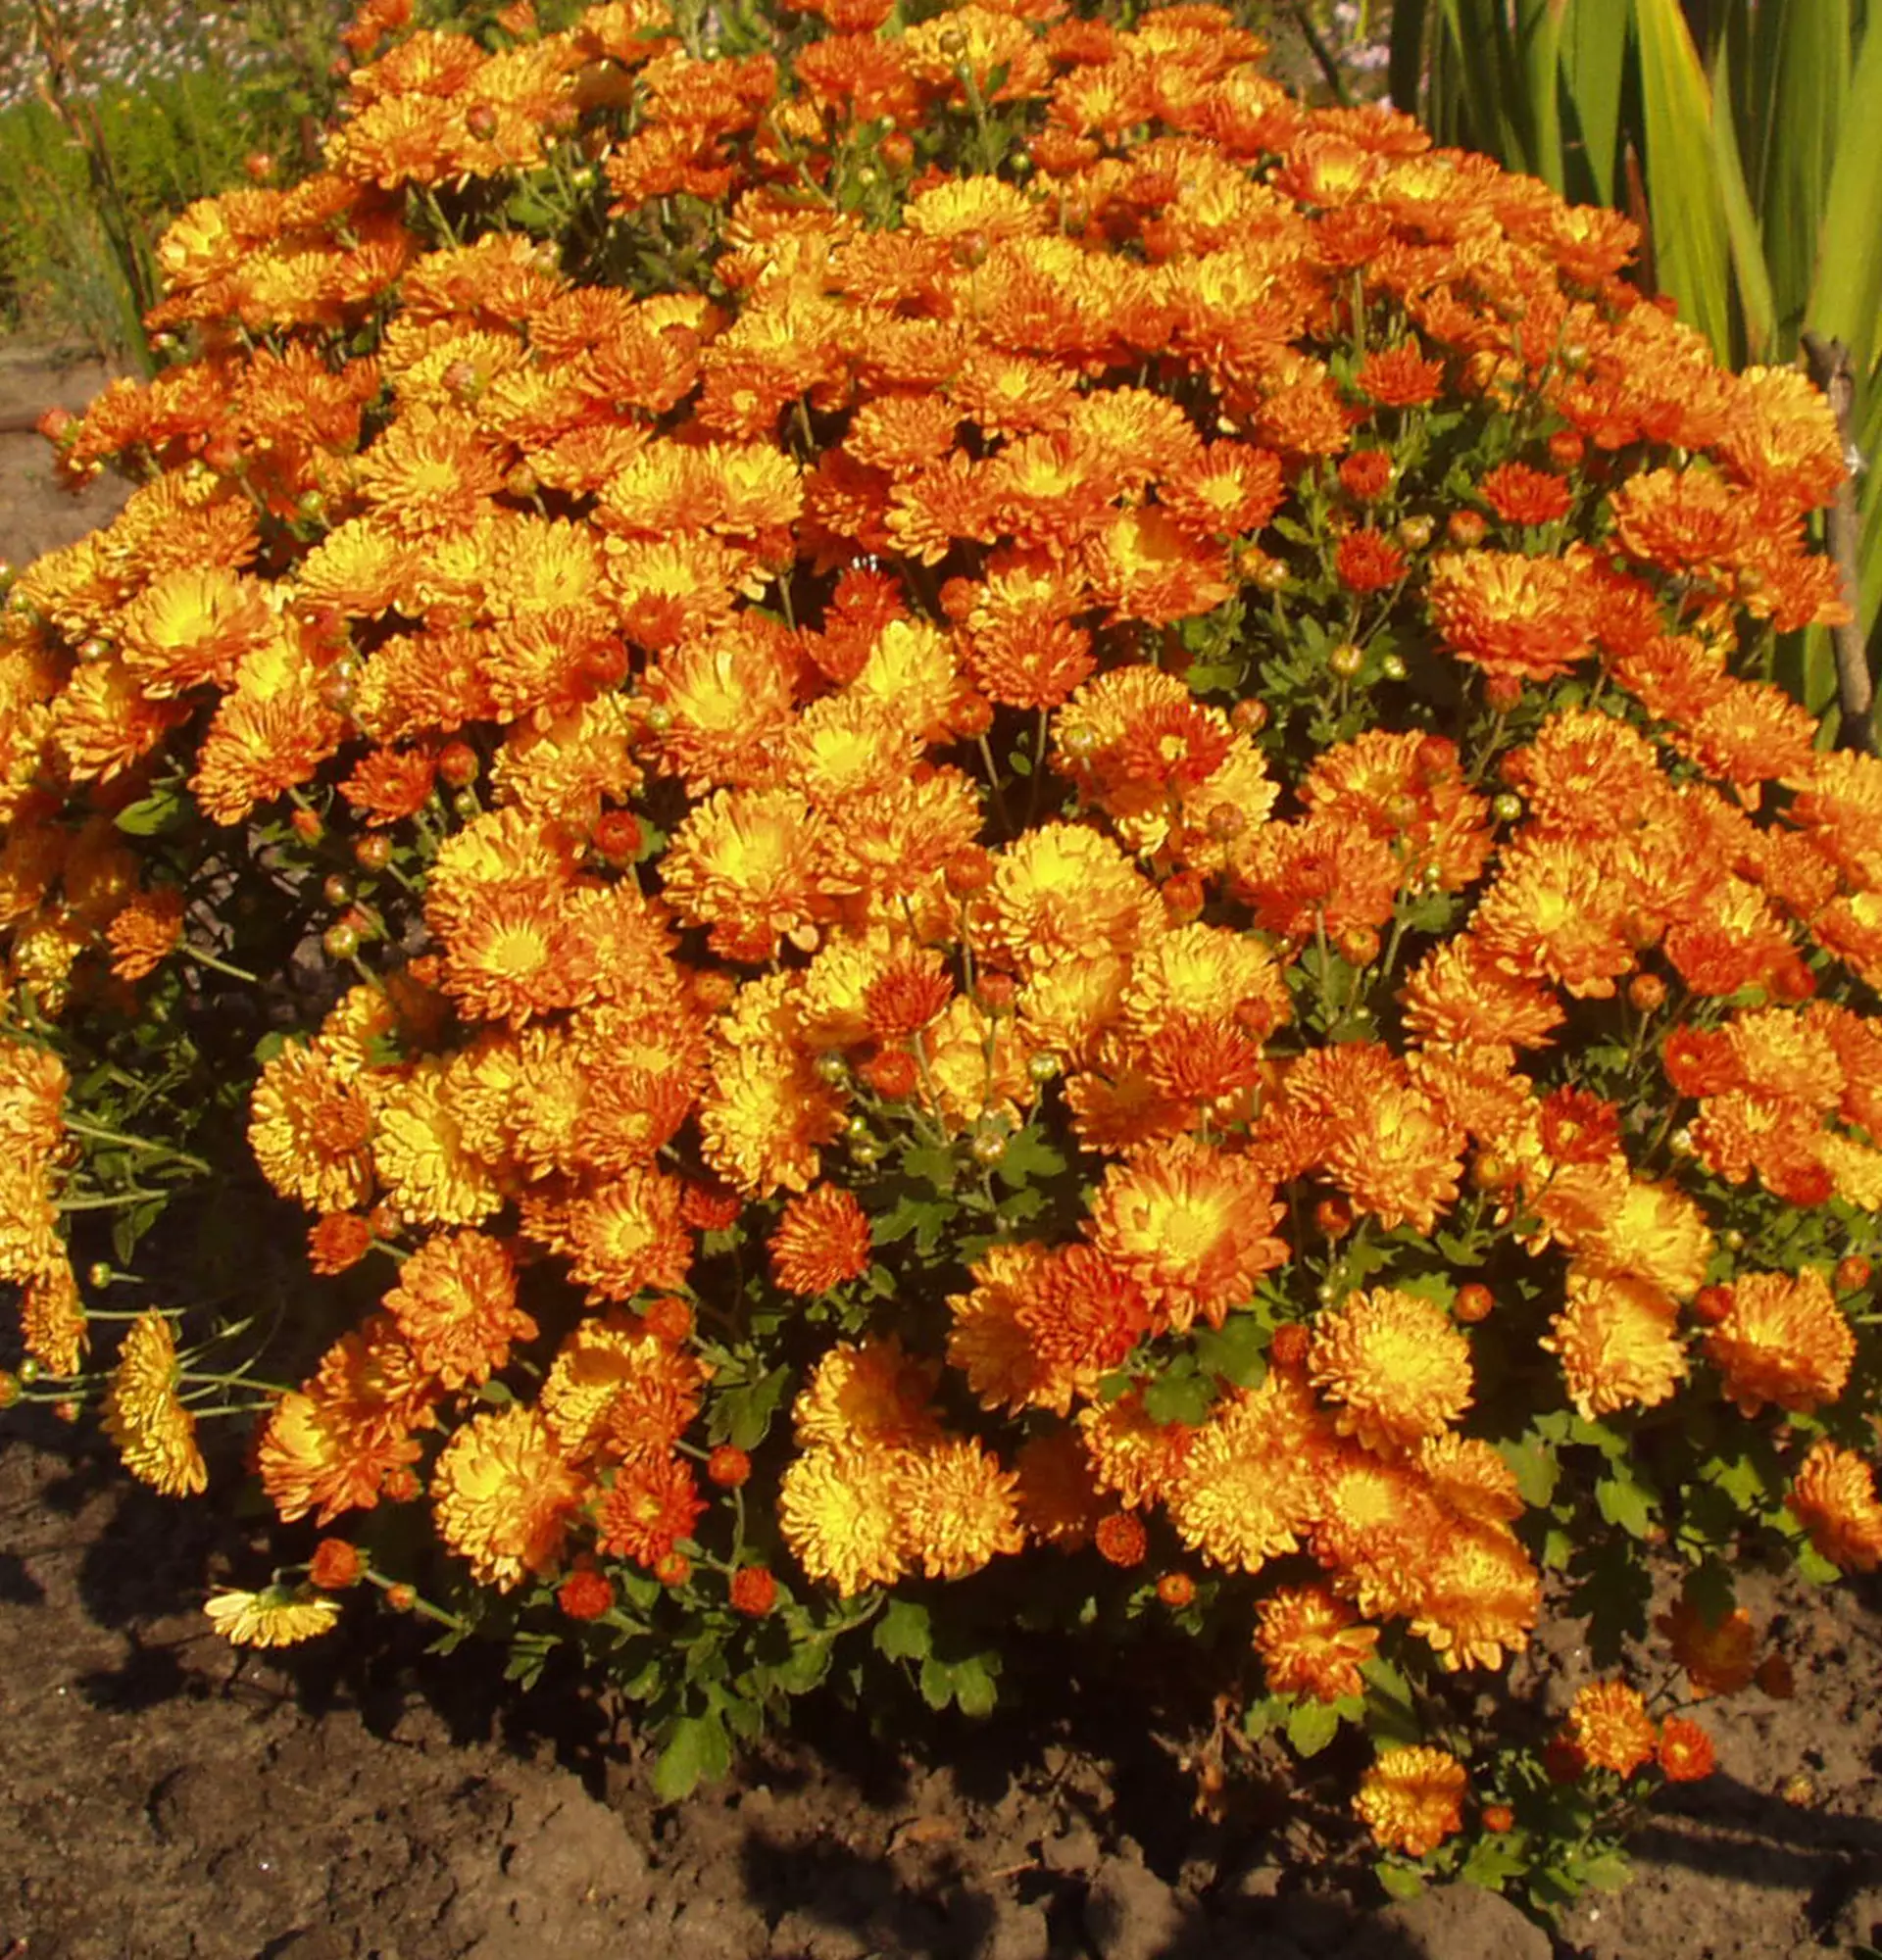 Foto der kugelförmigen Büsche der Chrysanthemen - orange